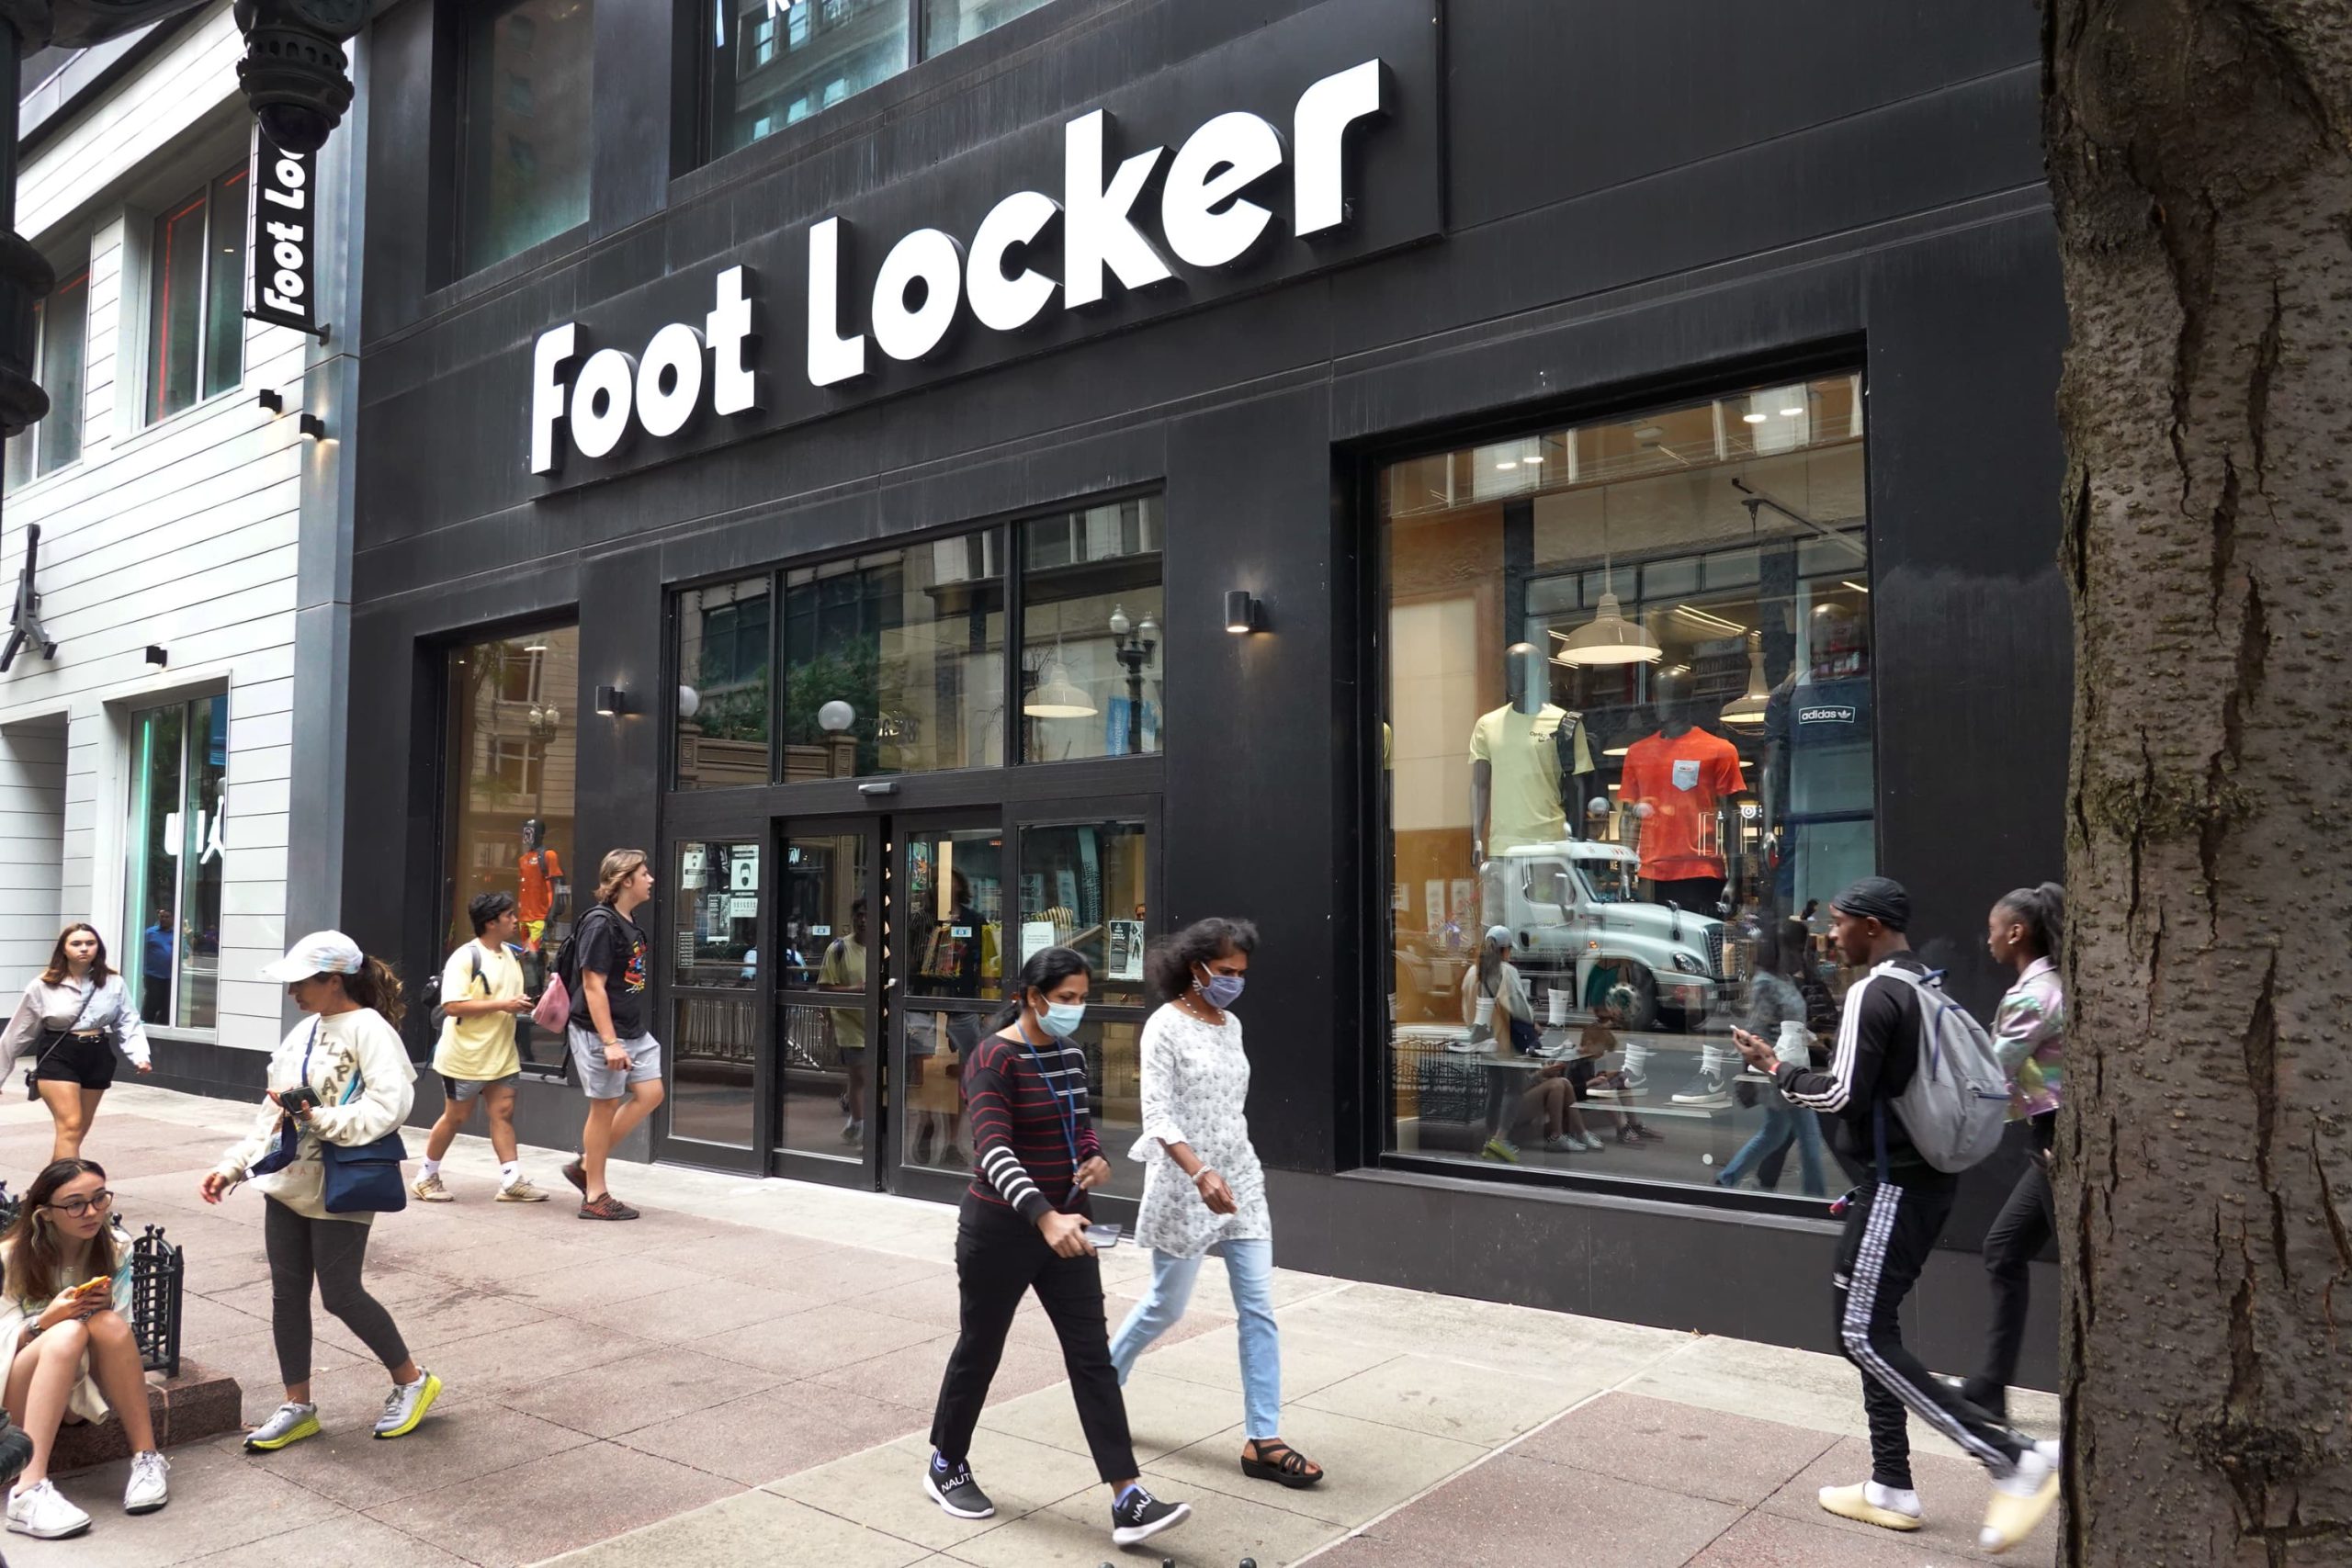 Foot Locker Survey